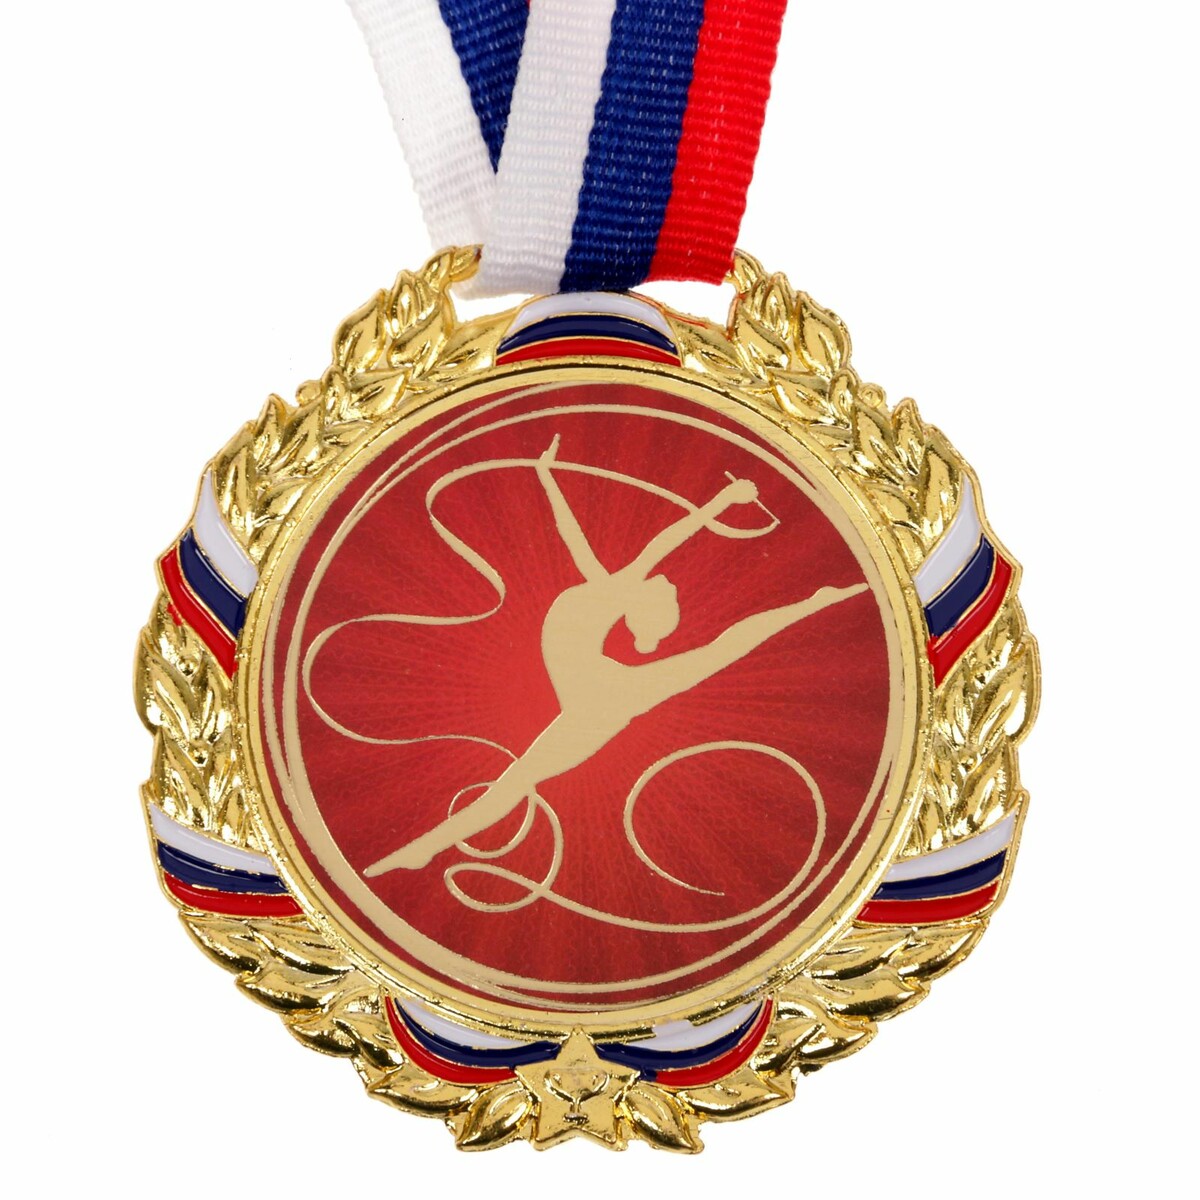 Медаль тематическая 006